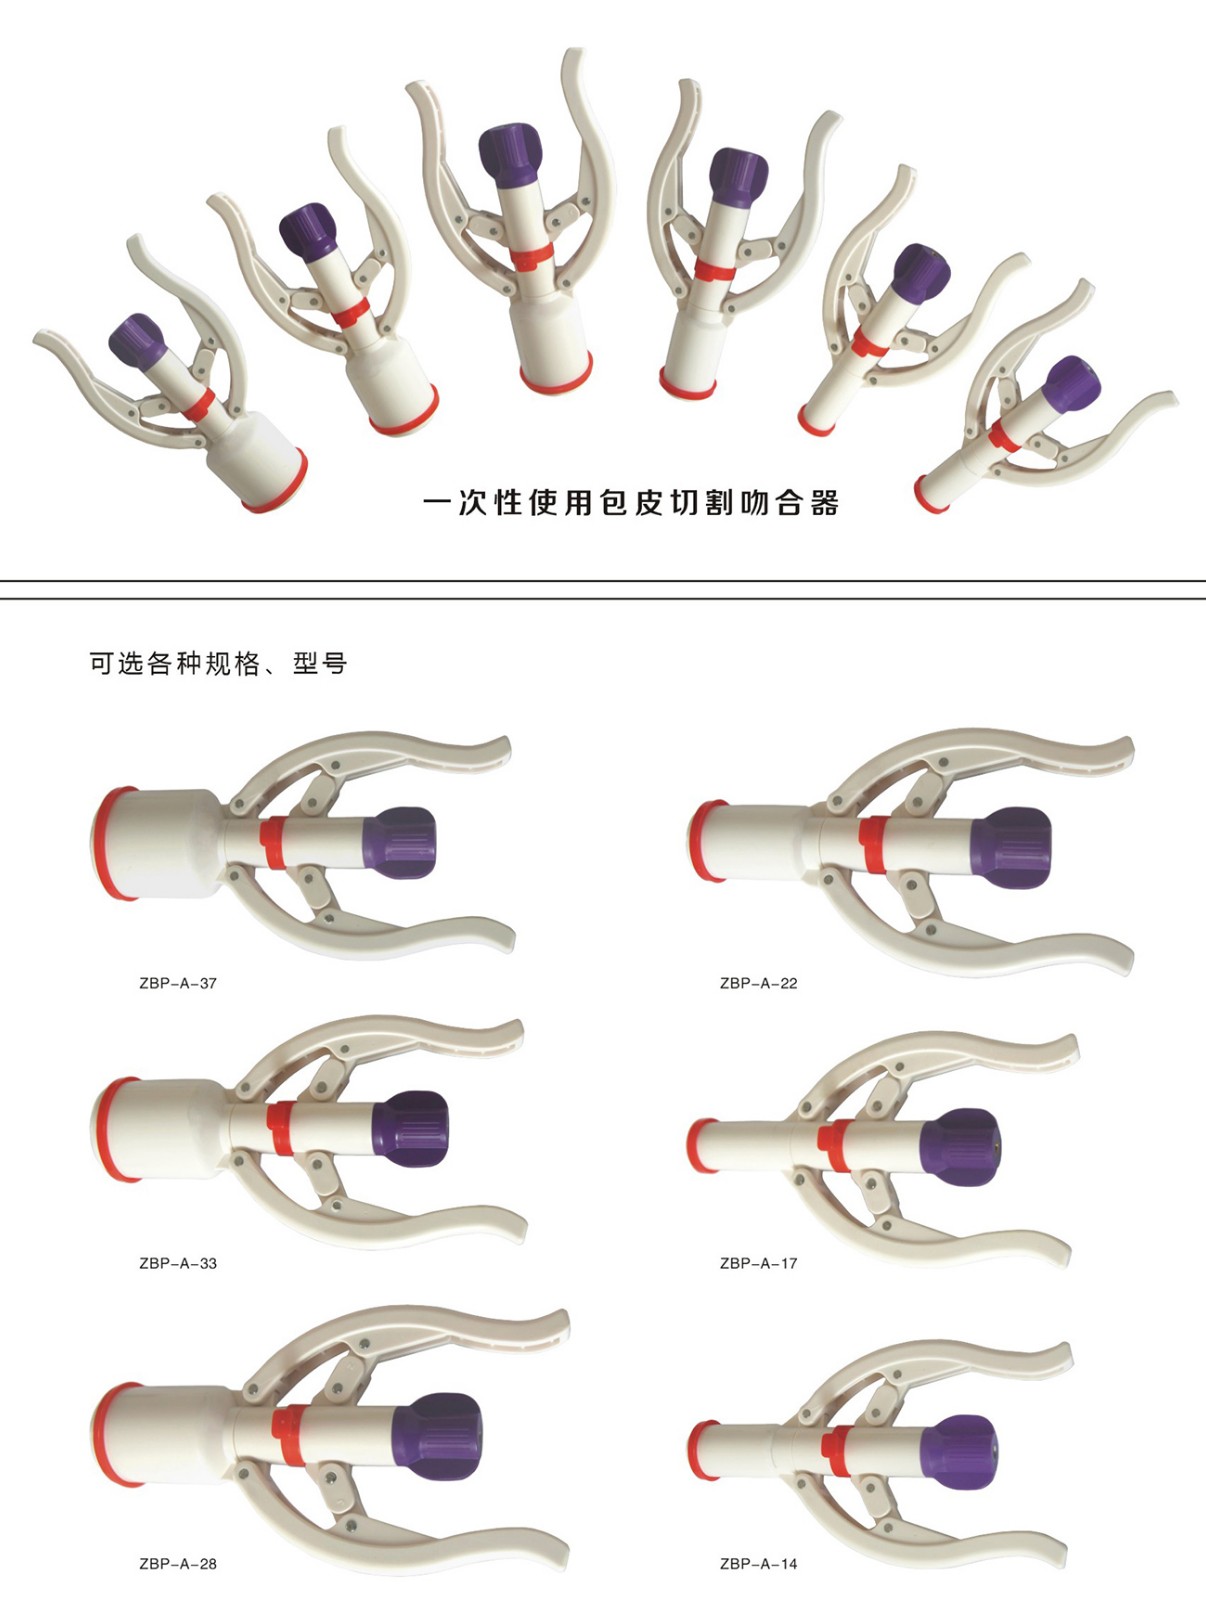 包皮吻合器（包皮环切缝合器）包皮环切术的优缺点 (原创)_手术